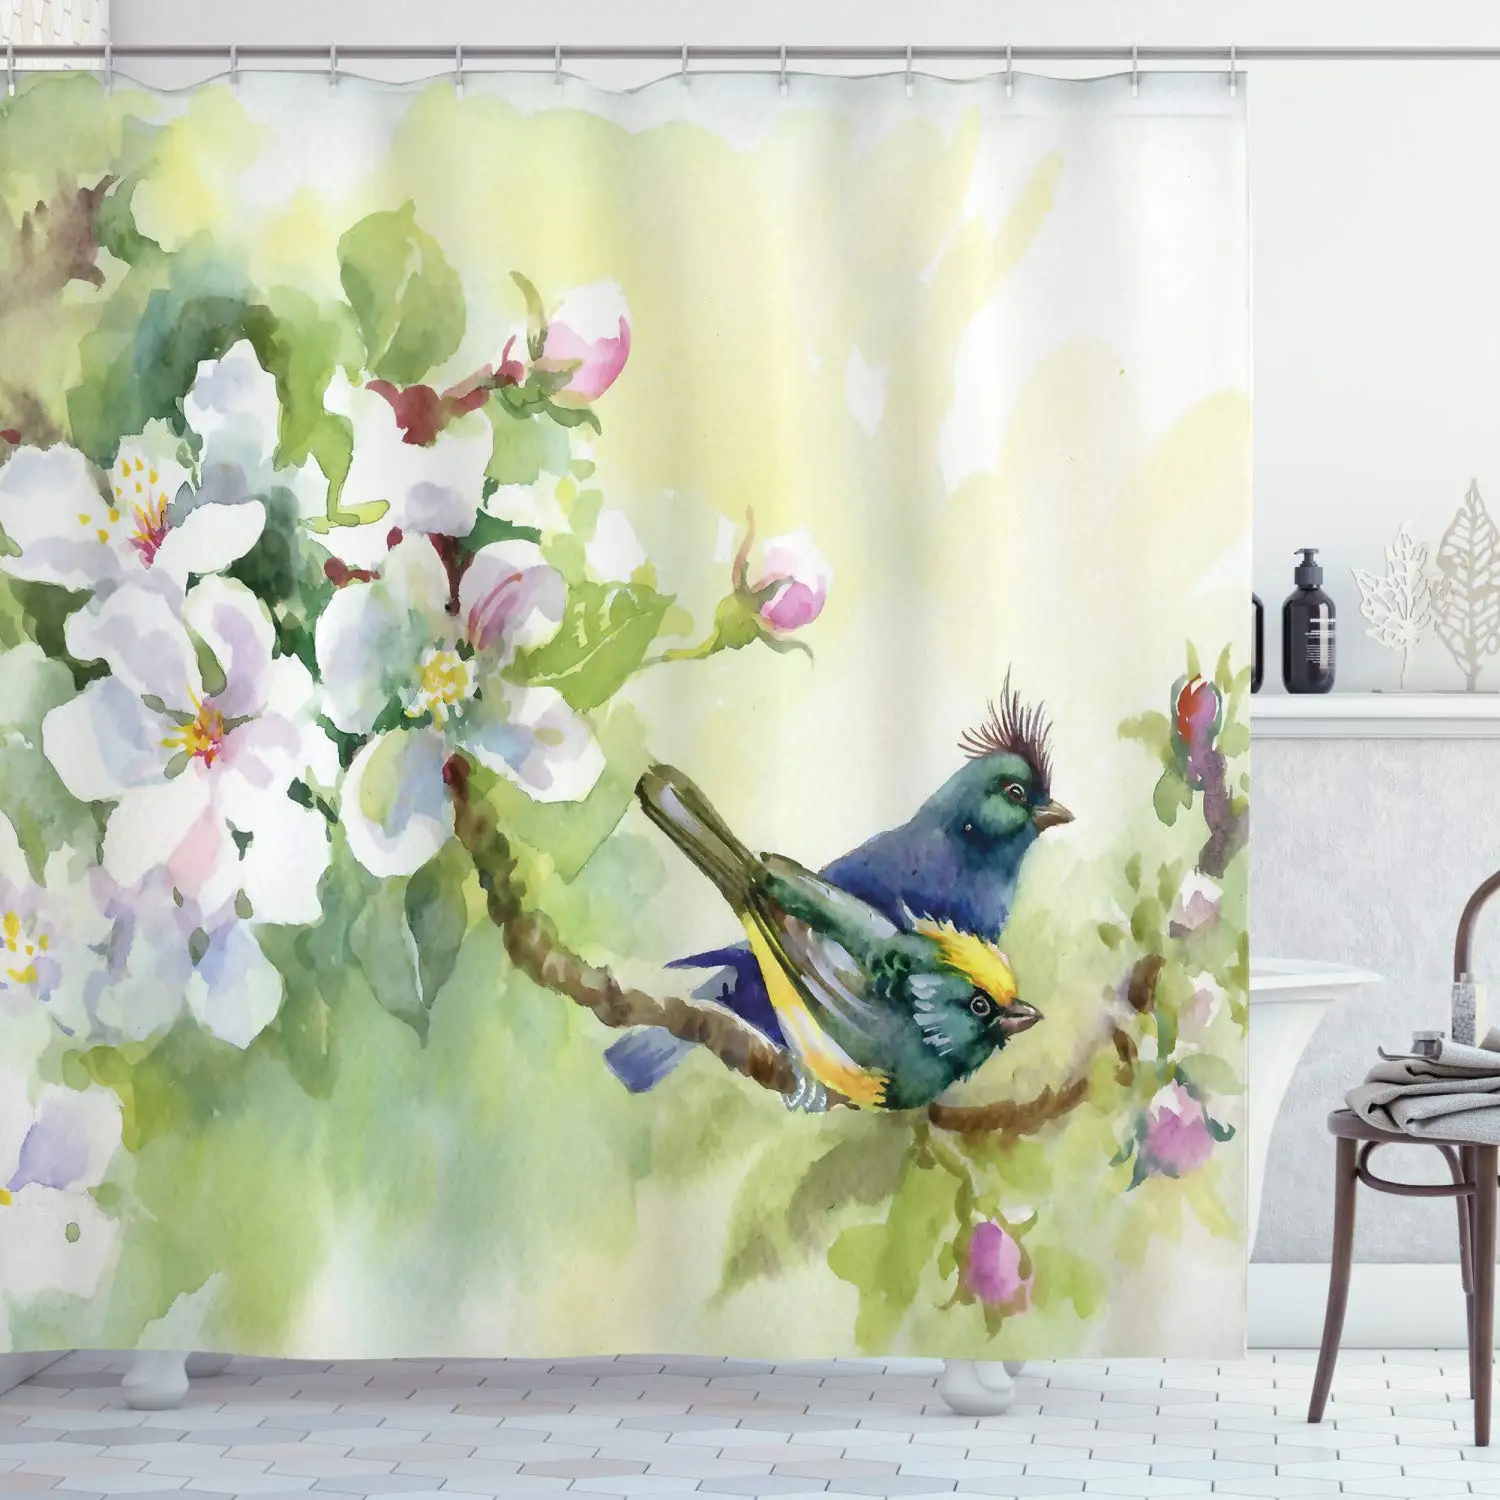 

Занавеска для душа с весенними цветами, тканевая занавеска для ванной комнаты с акварелью, цветущими дикими цветами и птицами с листьями и ветвями